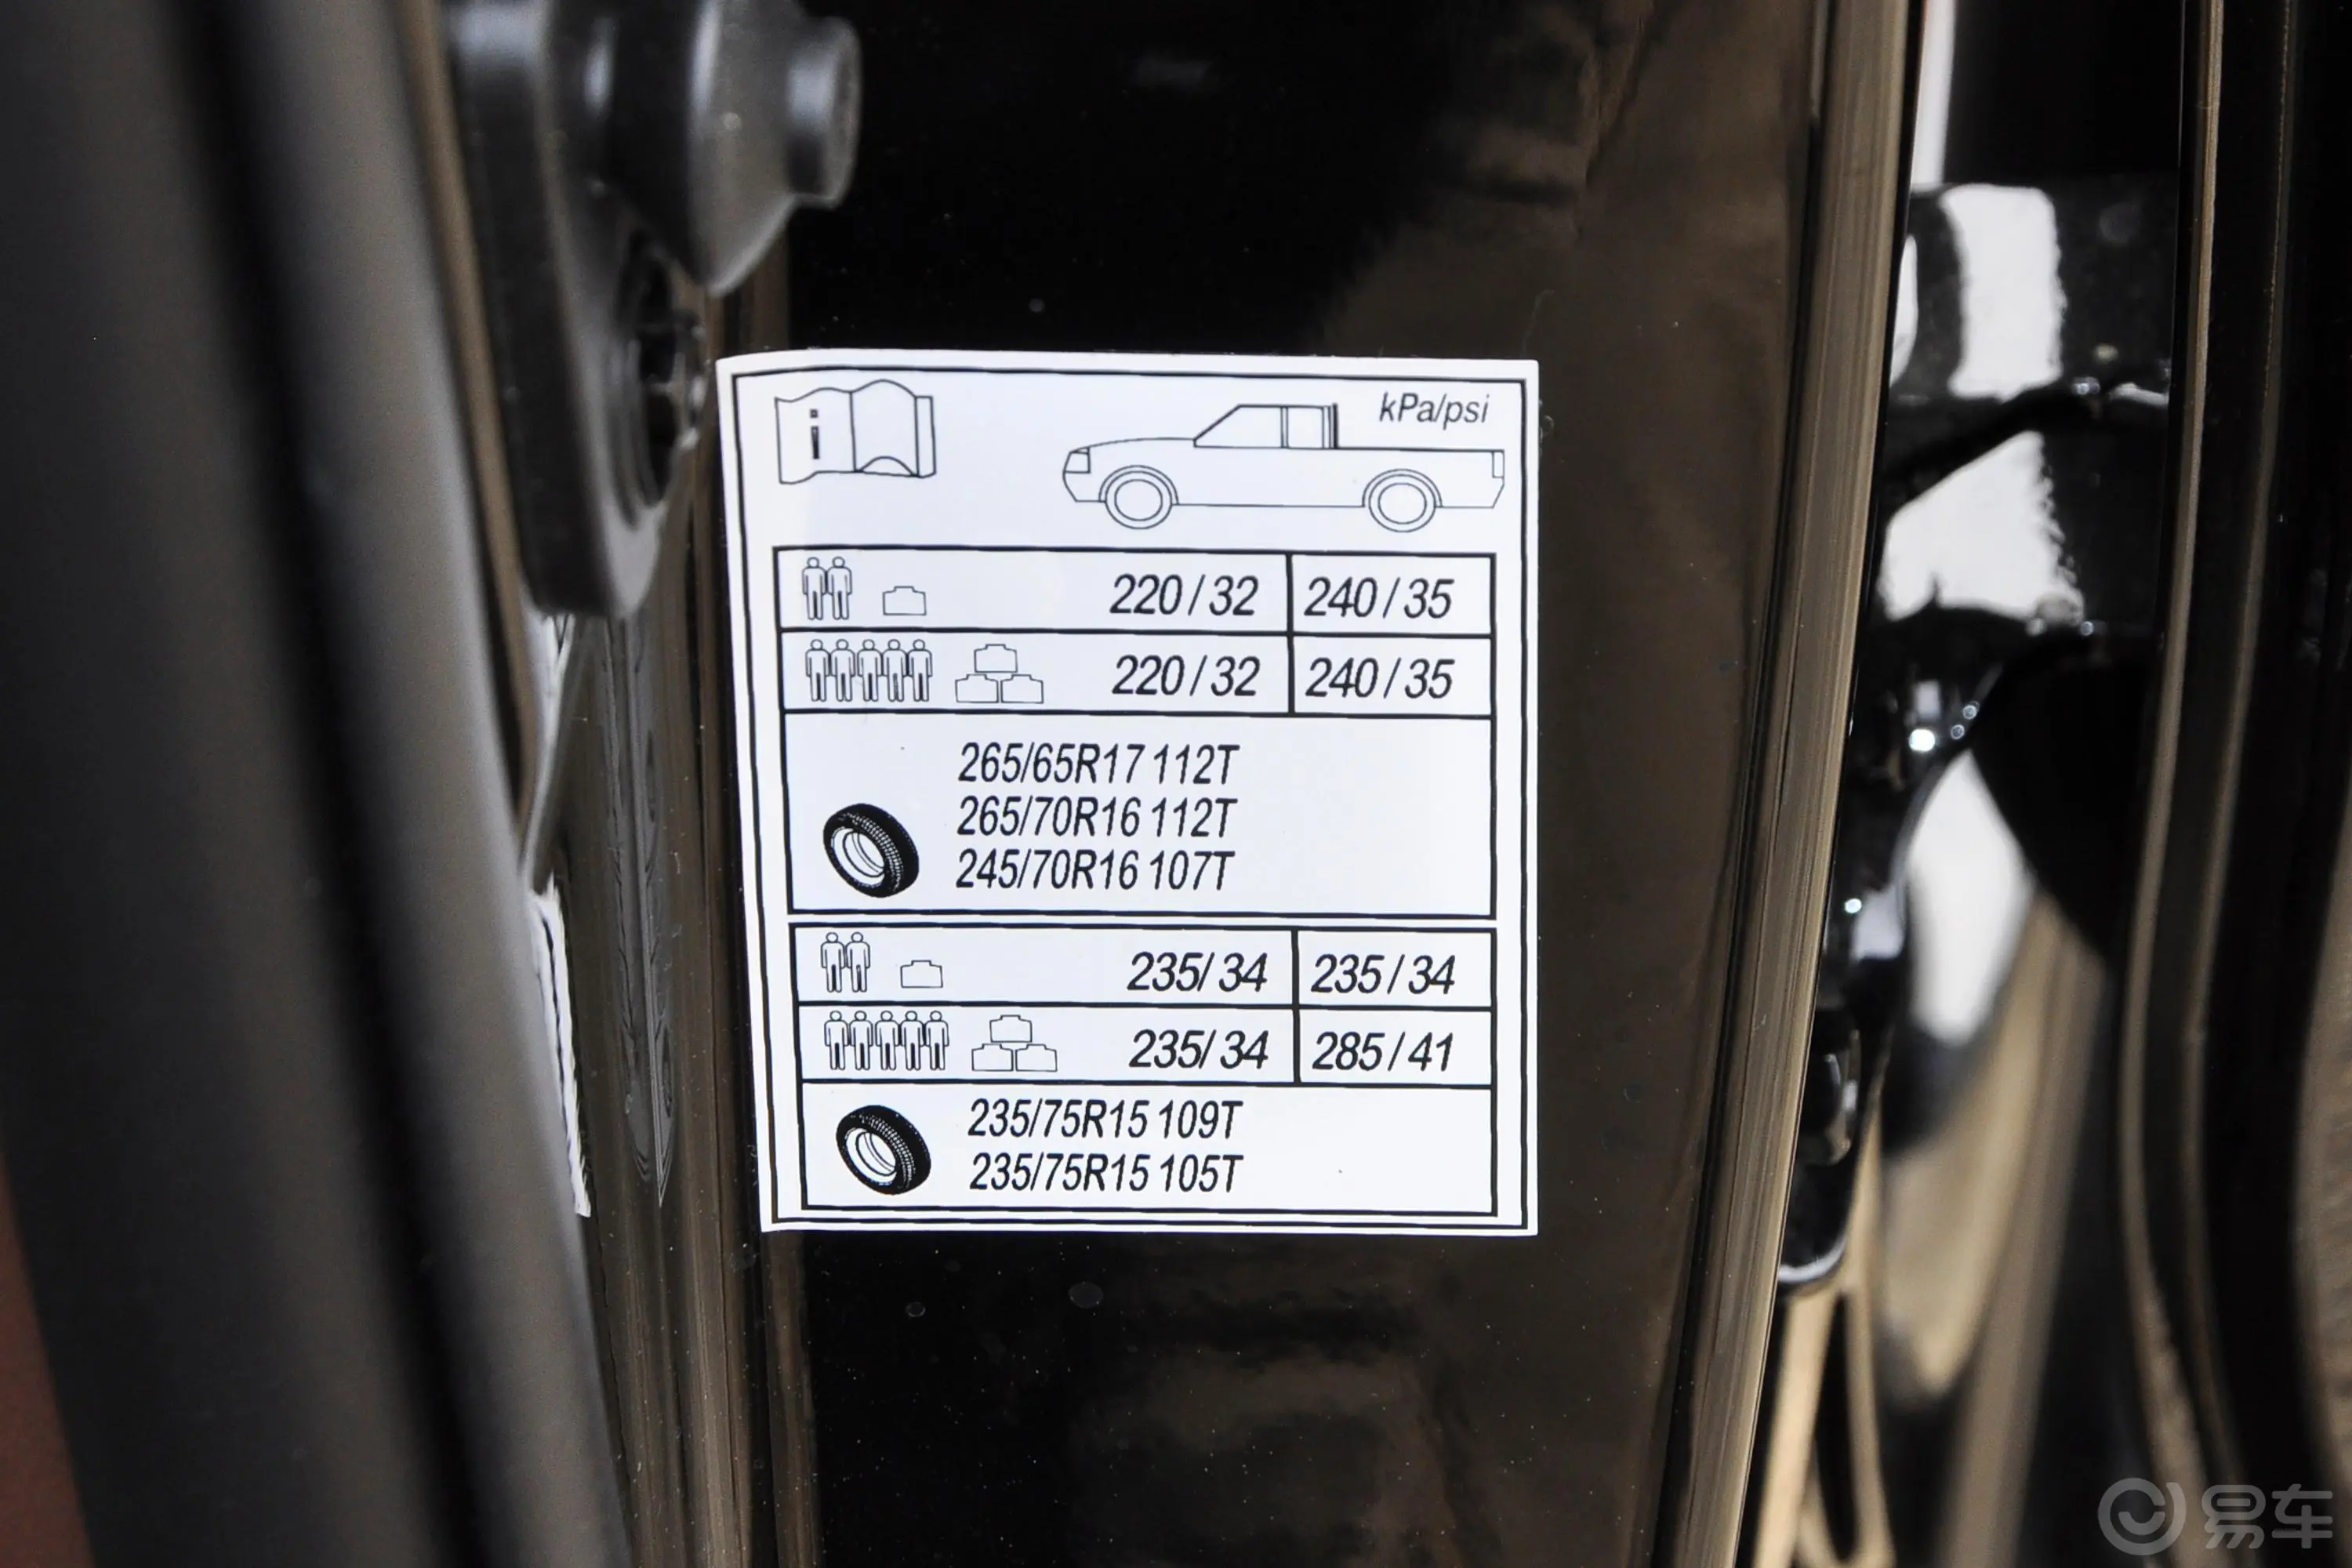 福田征服者32.0T 手动 两驱 长轴低货台 电商型 柴油胎压信息铭牌